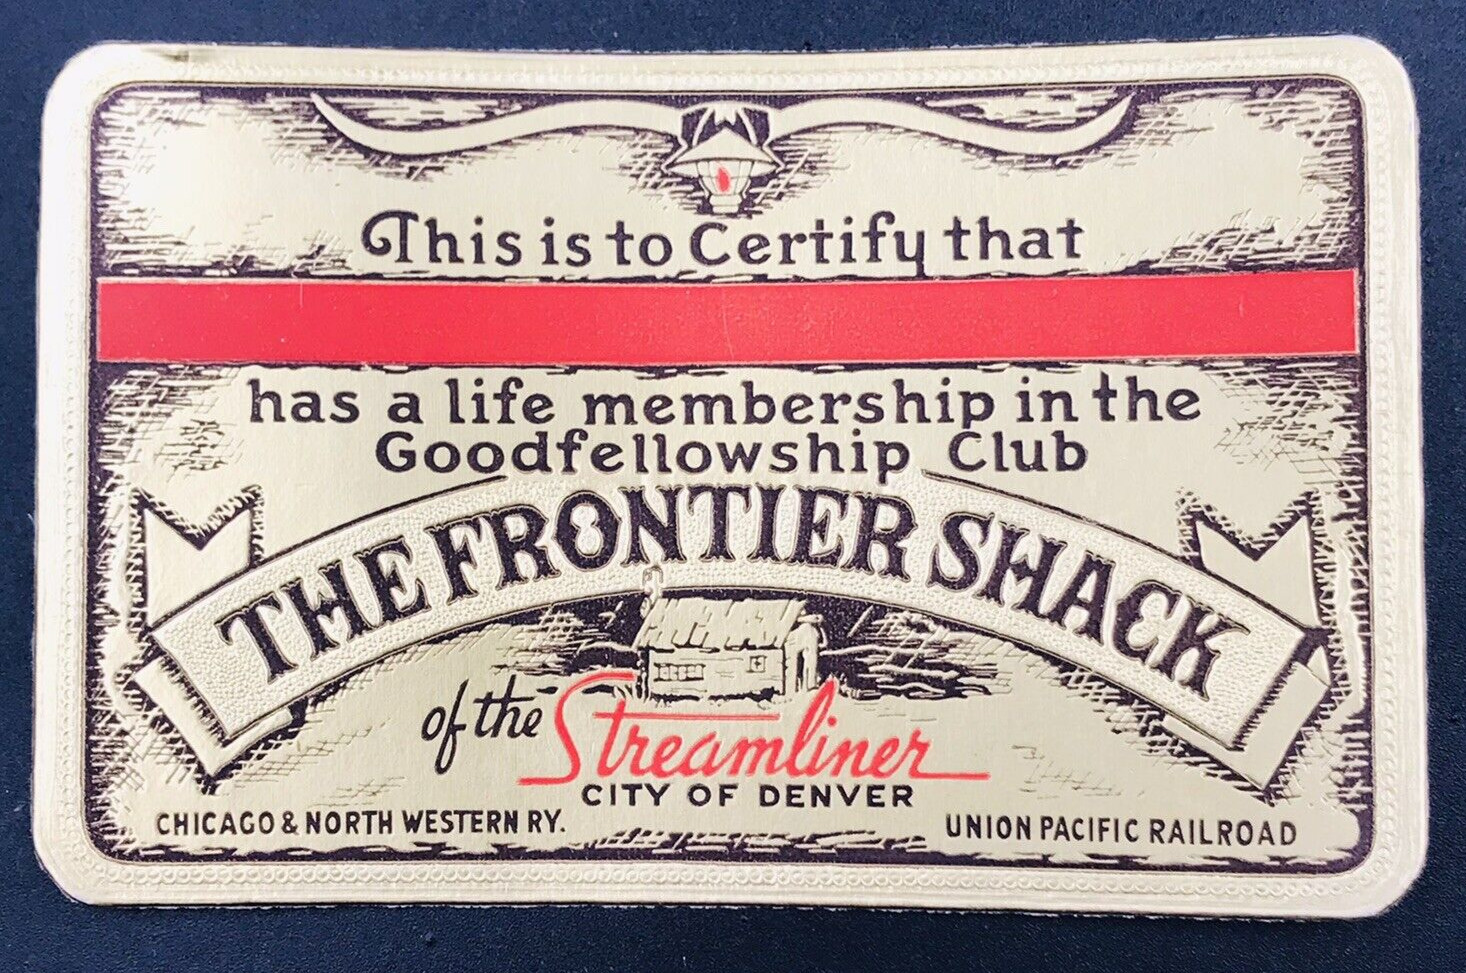 VTG Life Membership The Frontier Shack of The Streamliner City of Denver C & NW